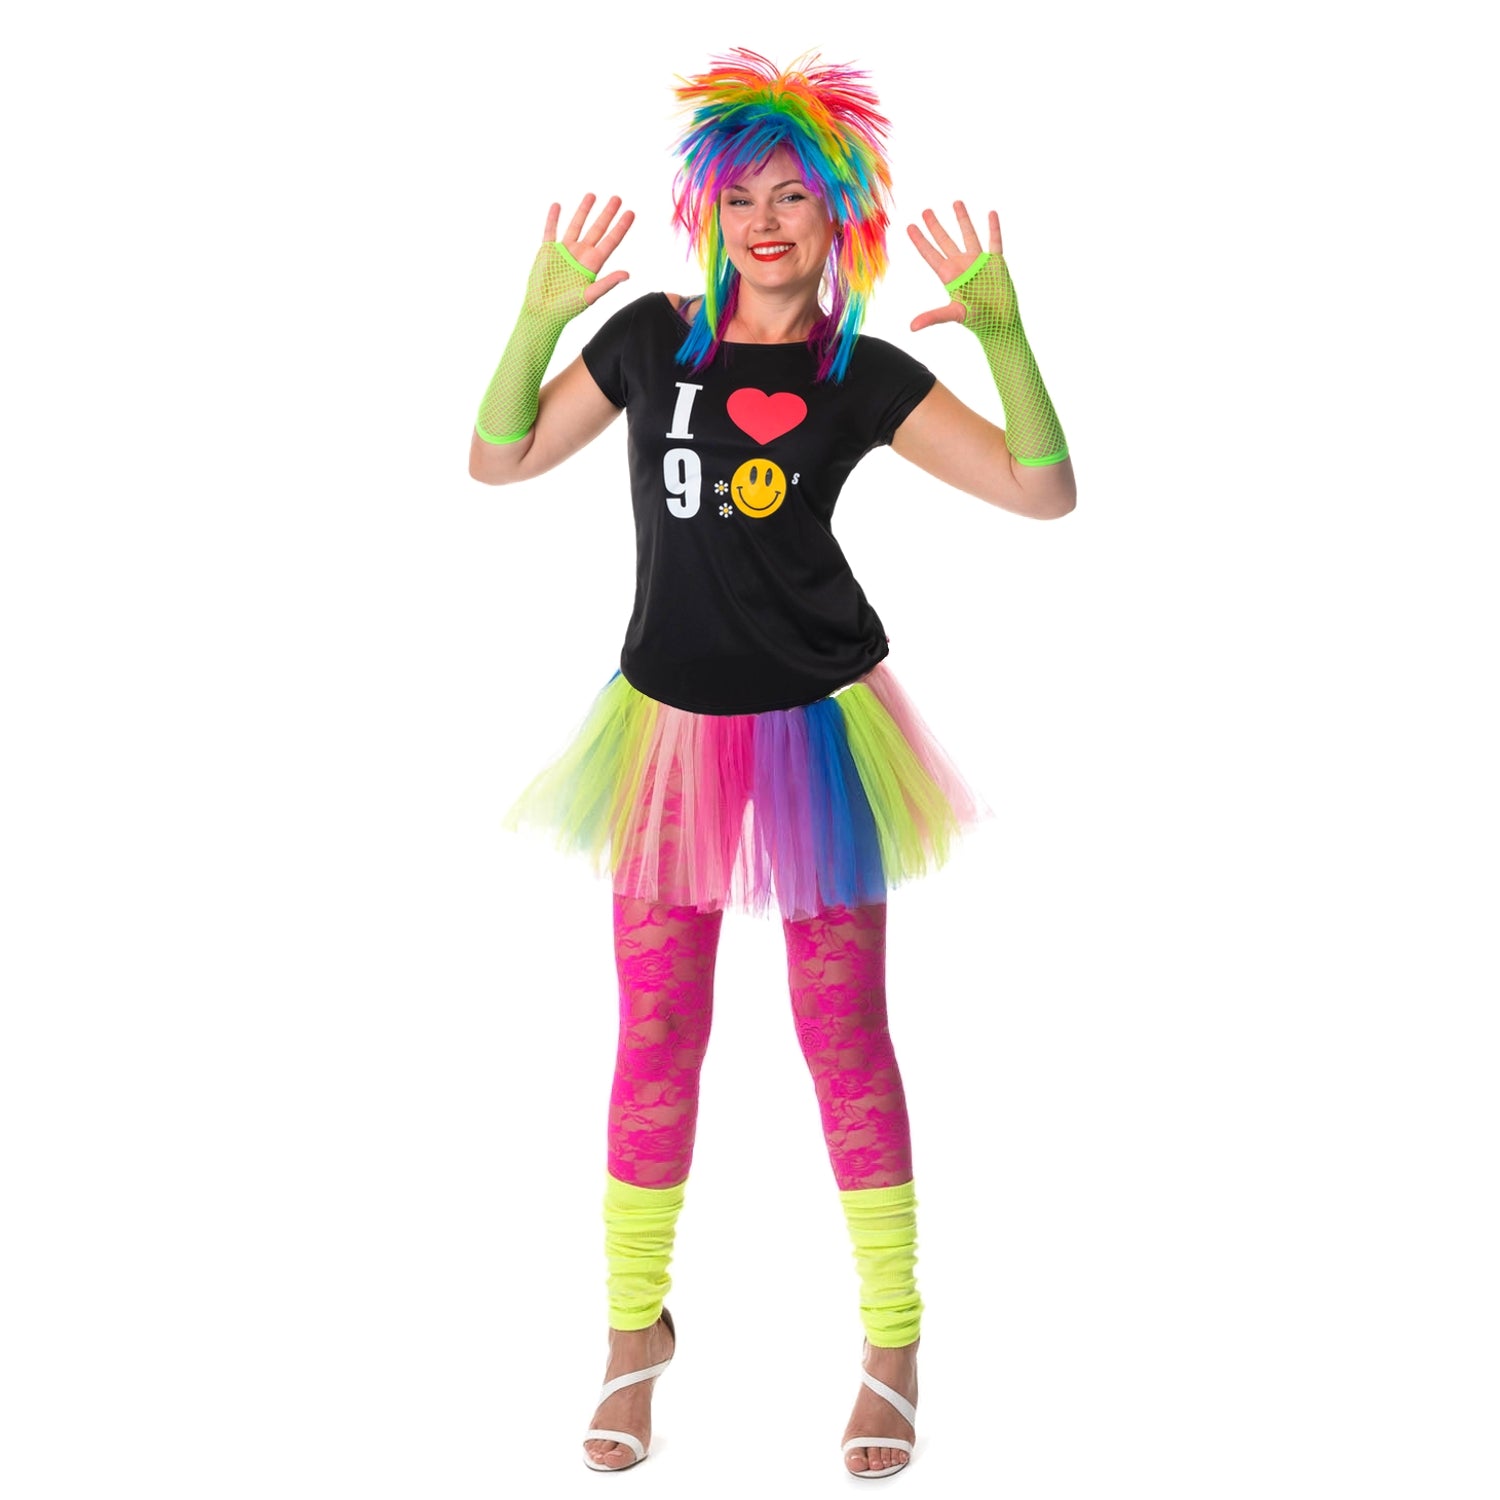 90s-neon-fancy-dress-costume